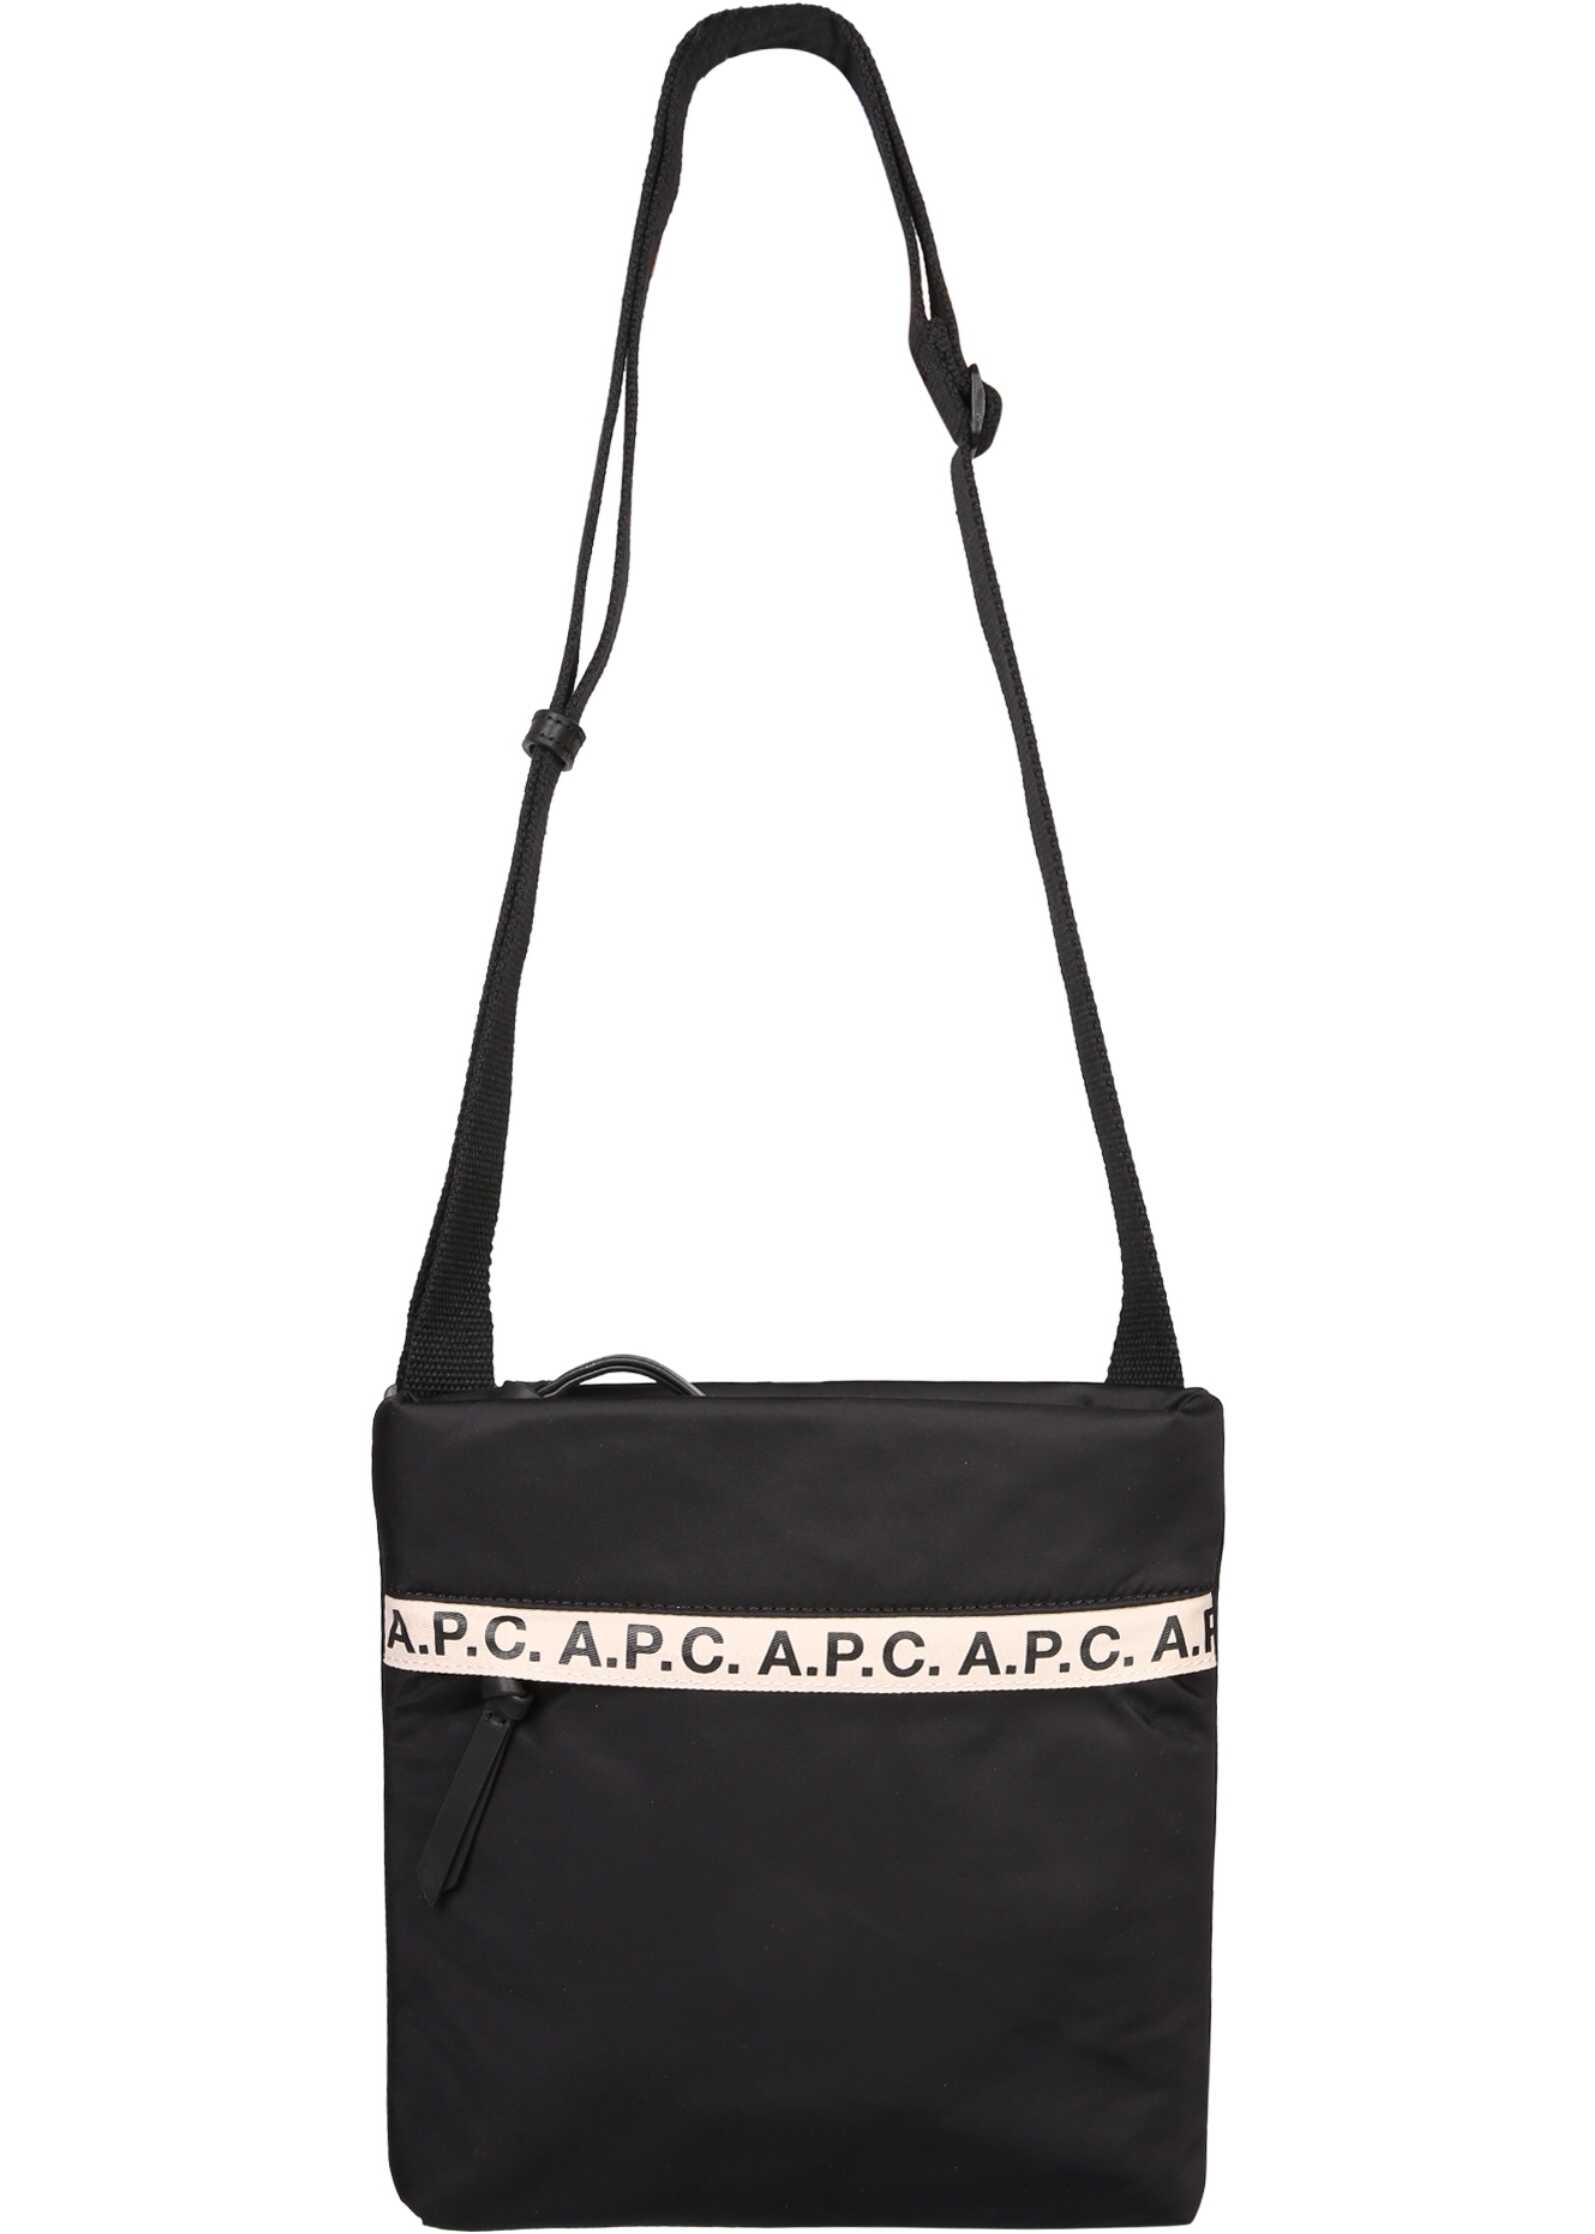 A.P.C. Shoulder Bag With Logo BLACK